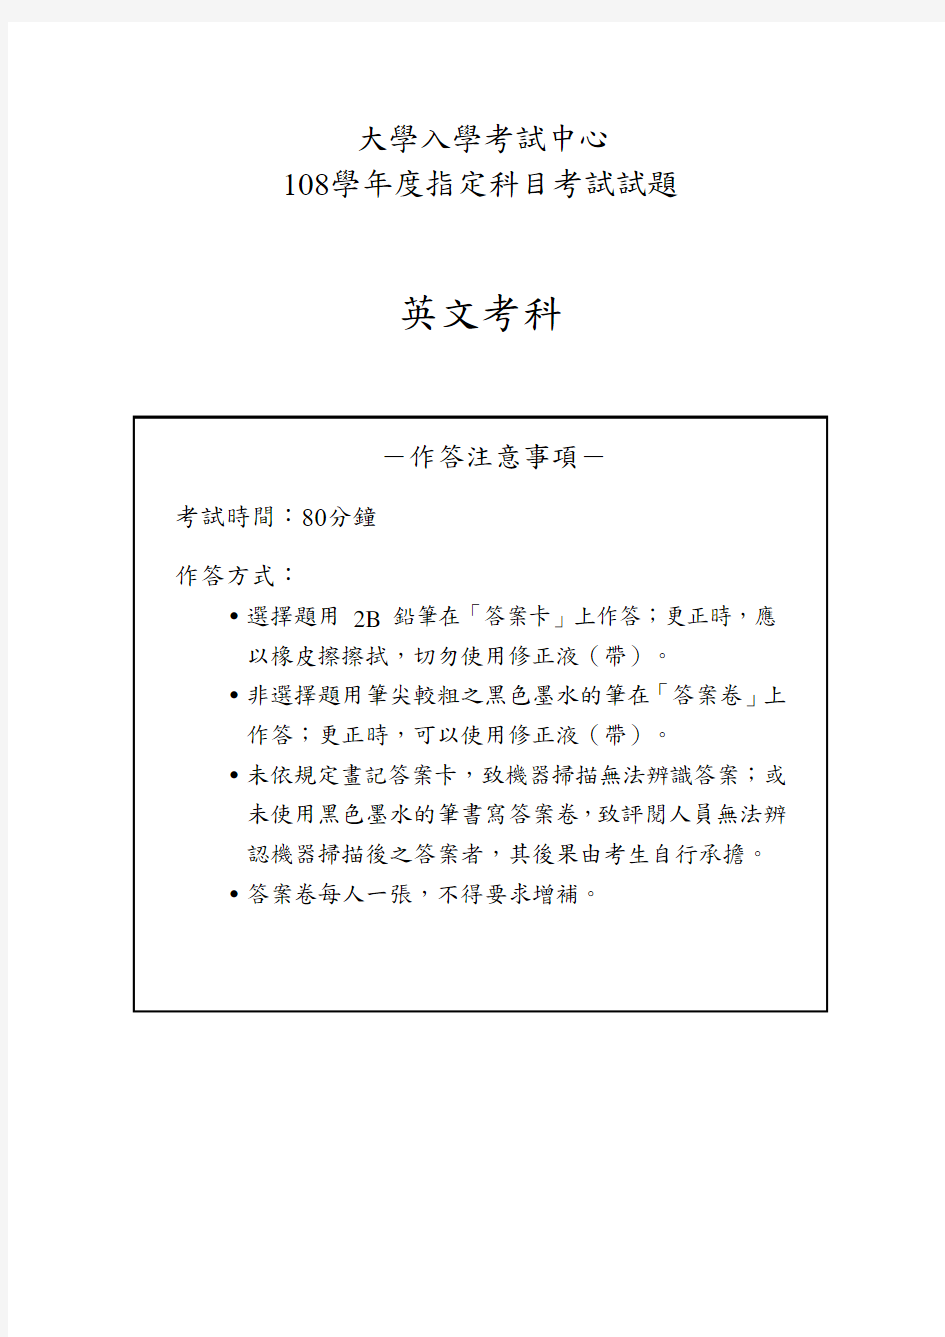 2019台湾大学入学考试试题02-108指考英文试卷定稿